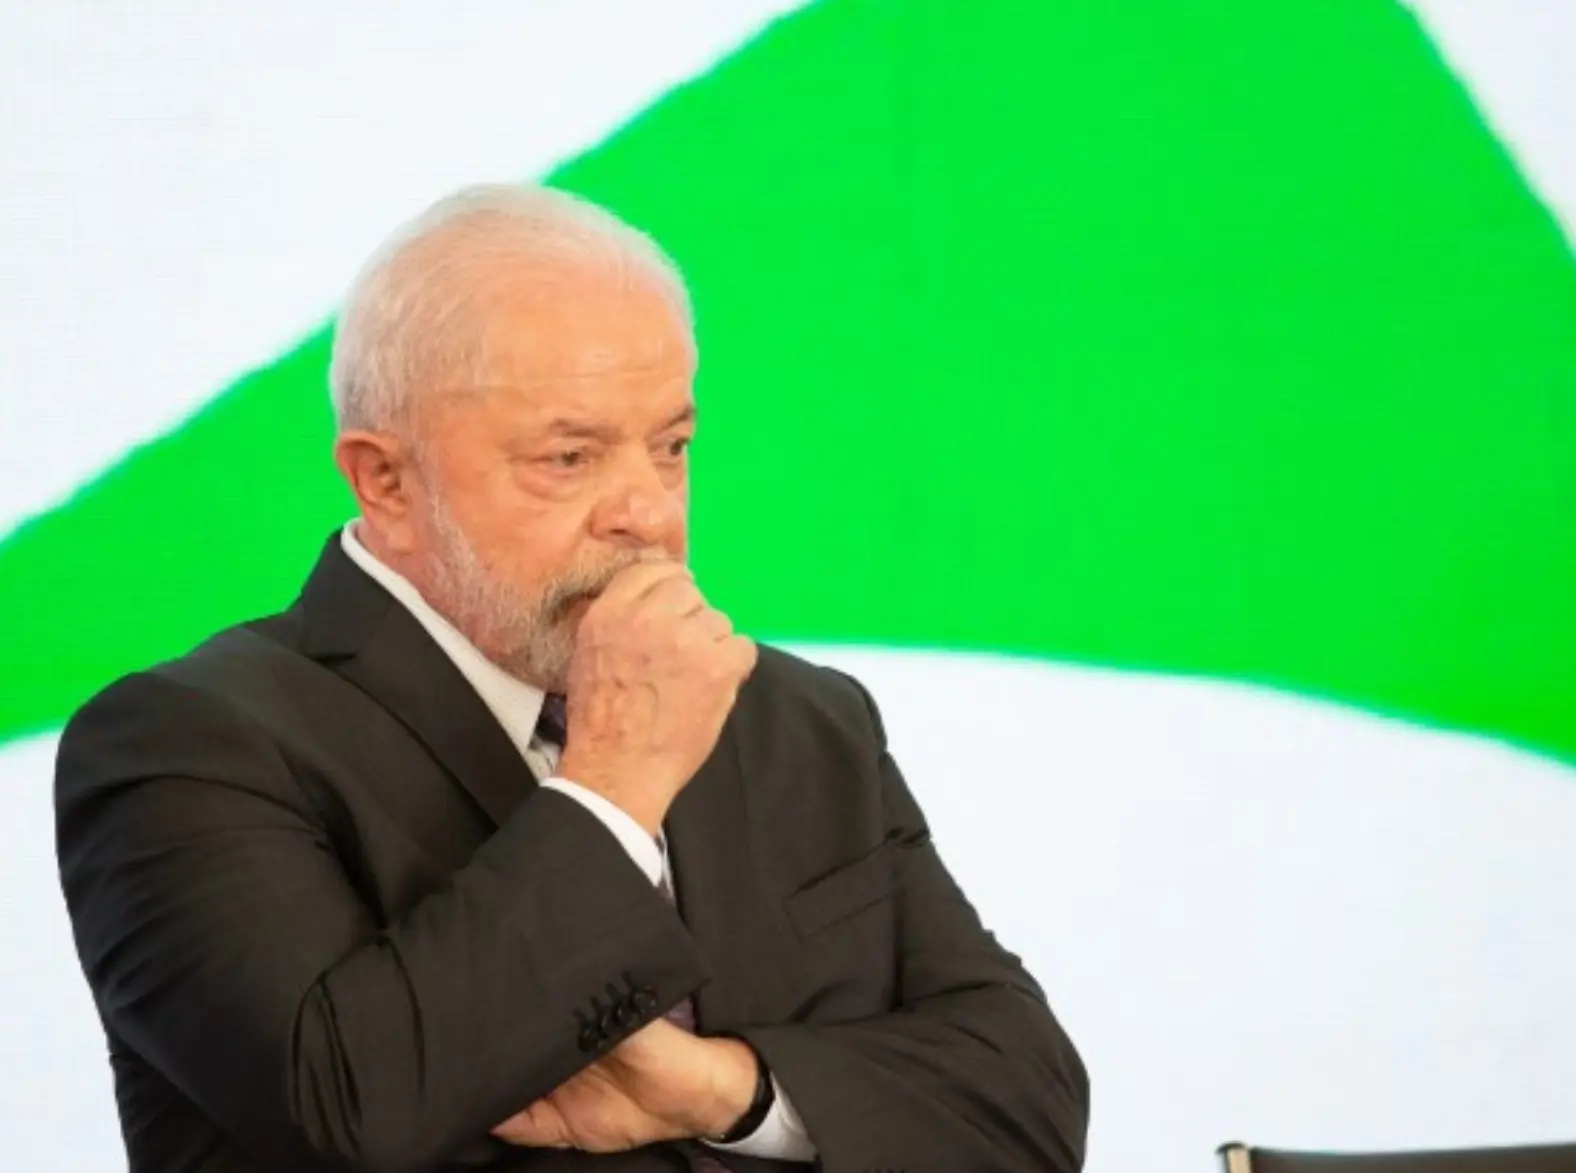 Fatos desmentem analogia absurda de Lula sobre Israel, afirma porta-voz das FDI